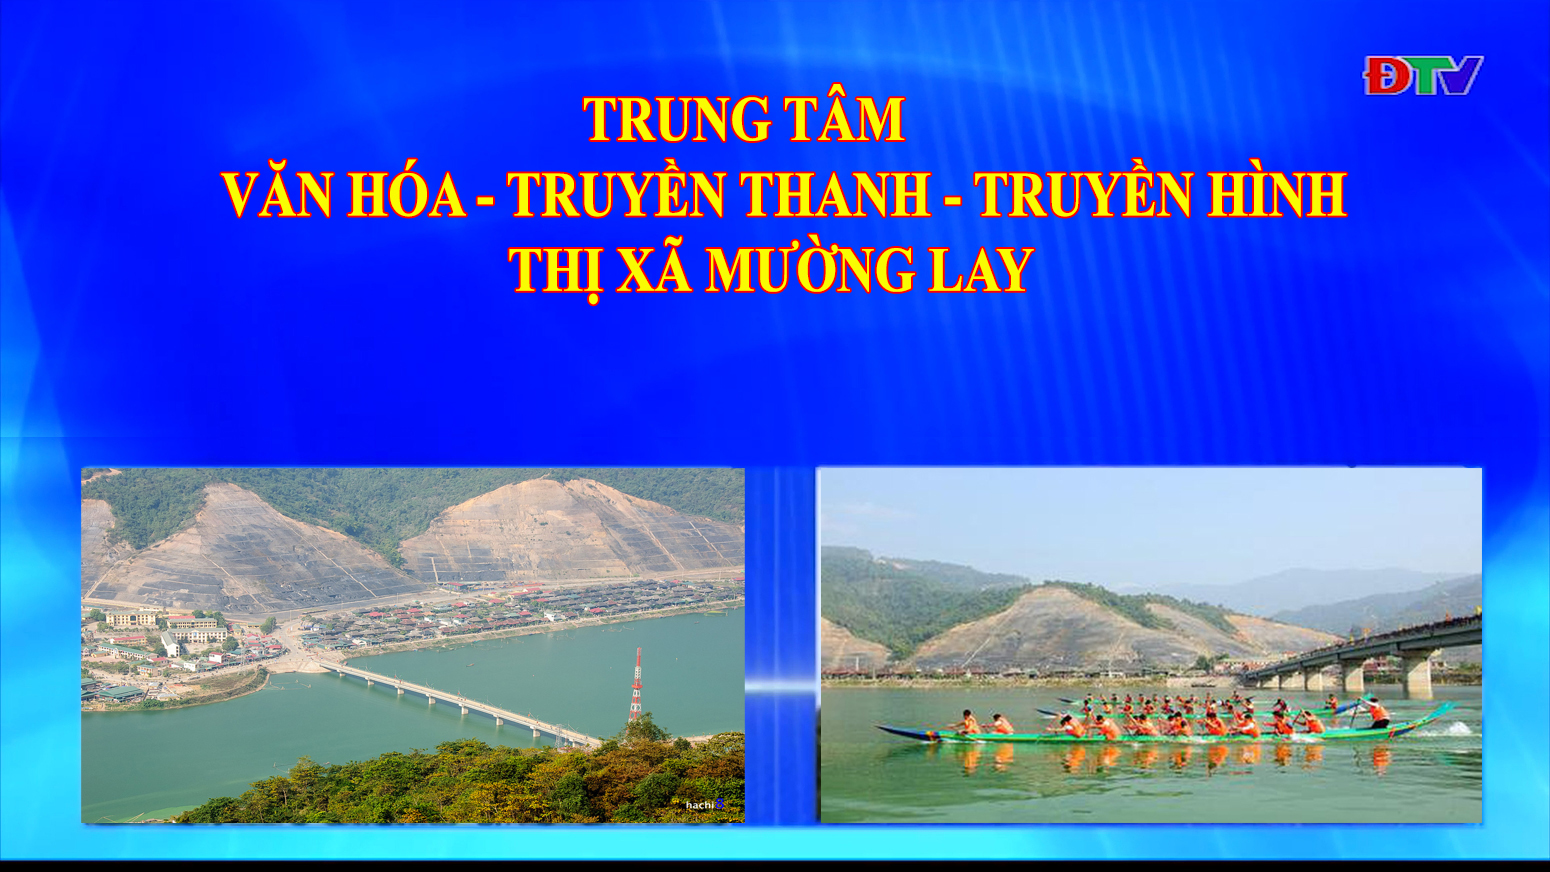 Trung tâm VH-TTTH thị xã Mường Lay (Ngày 26-2-2021)